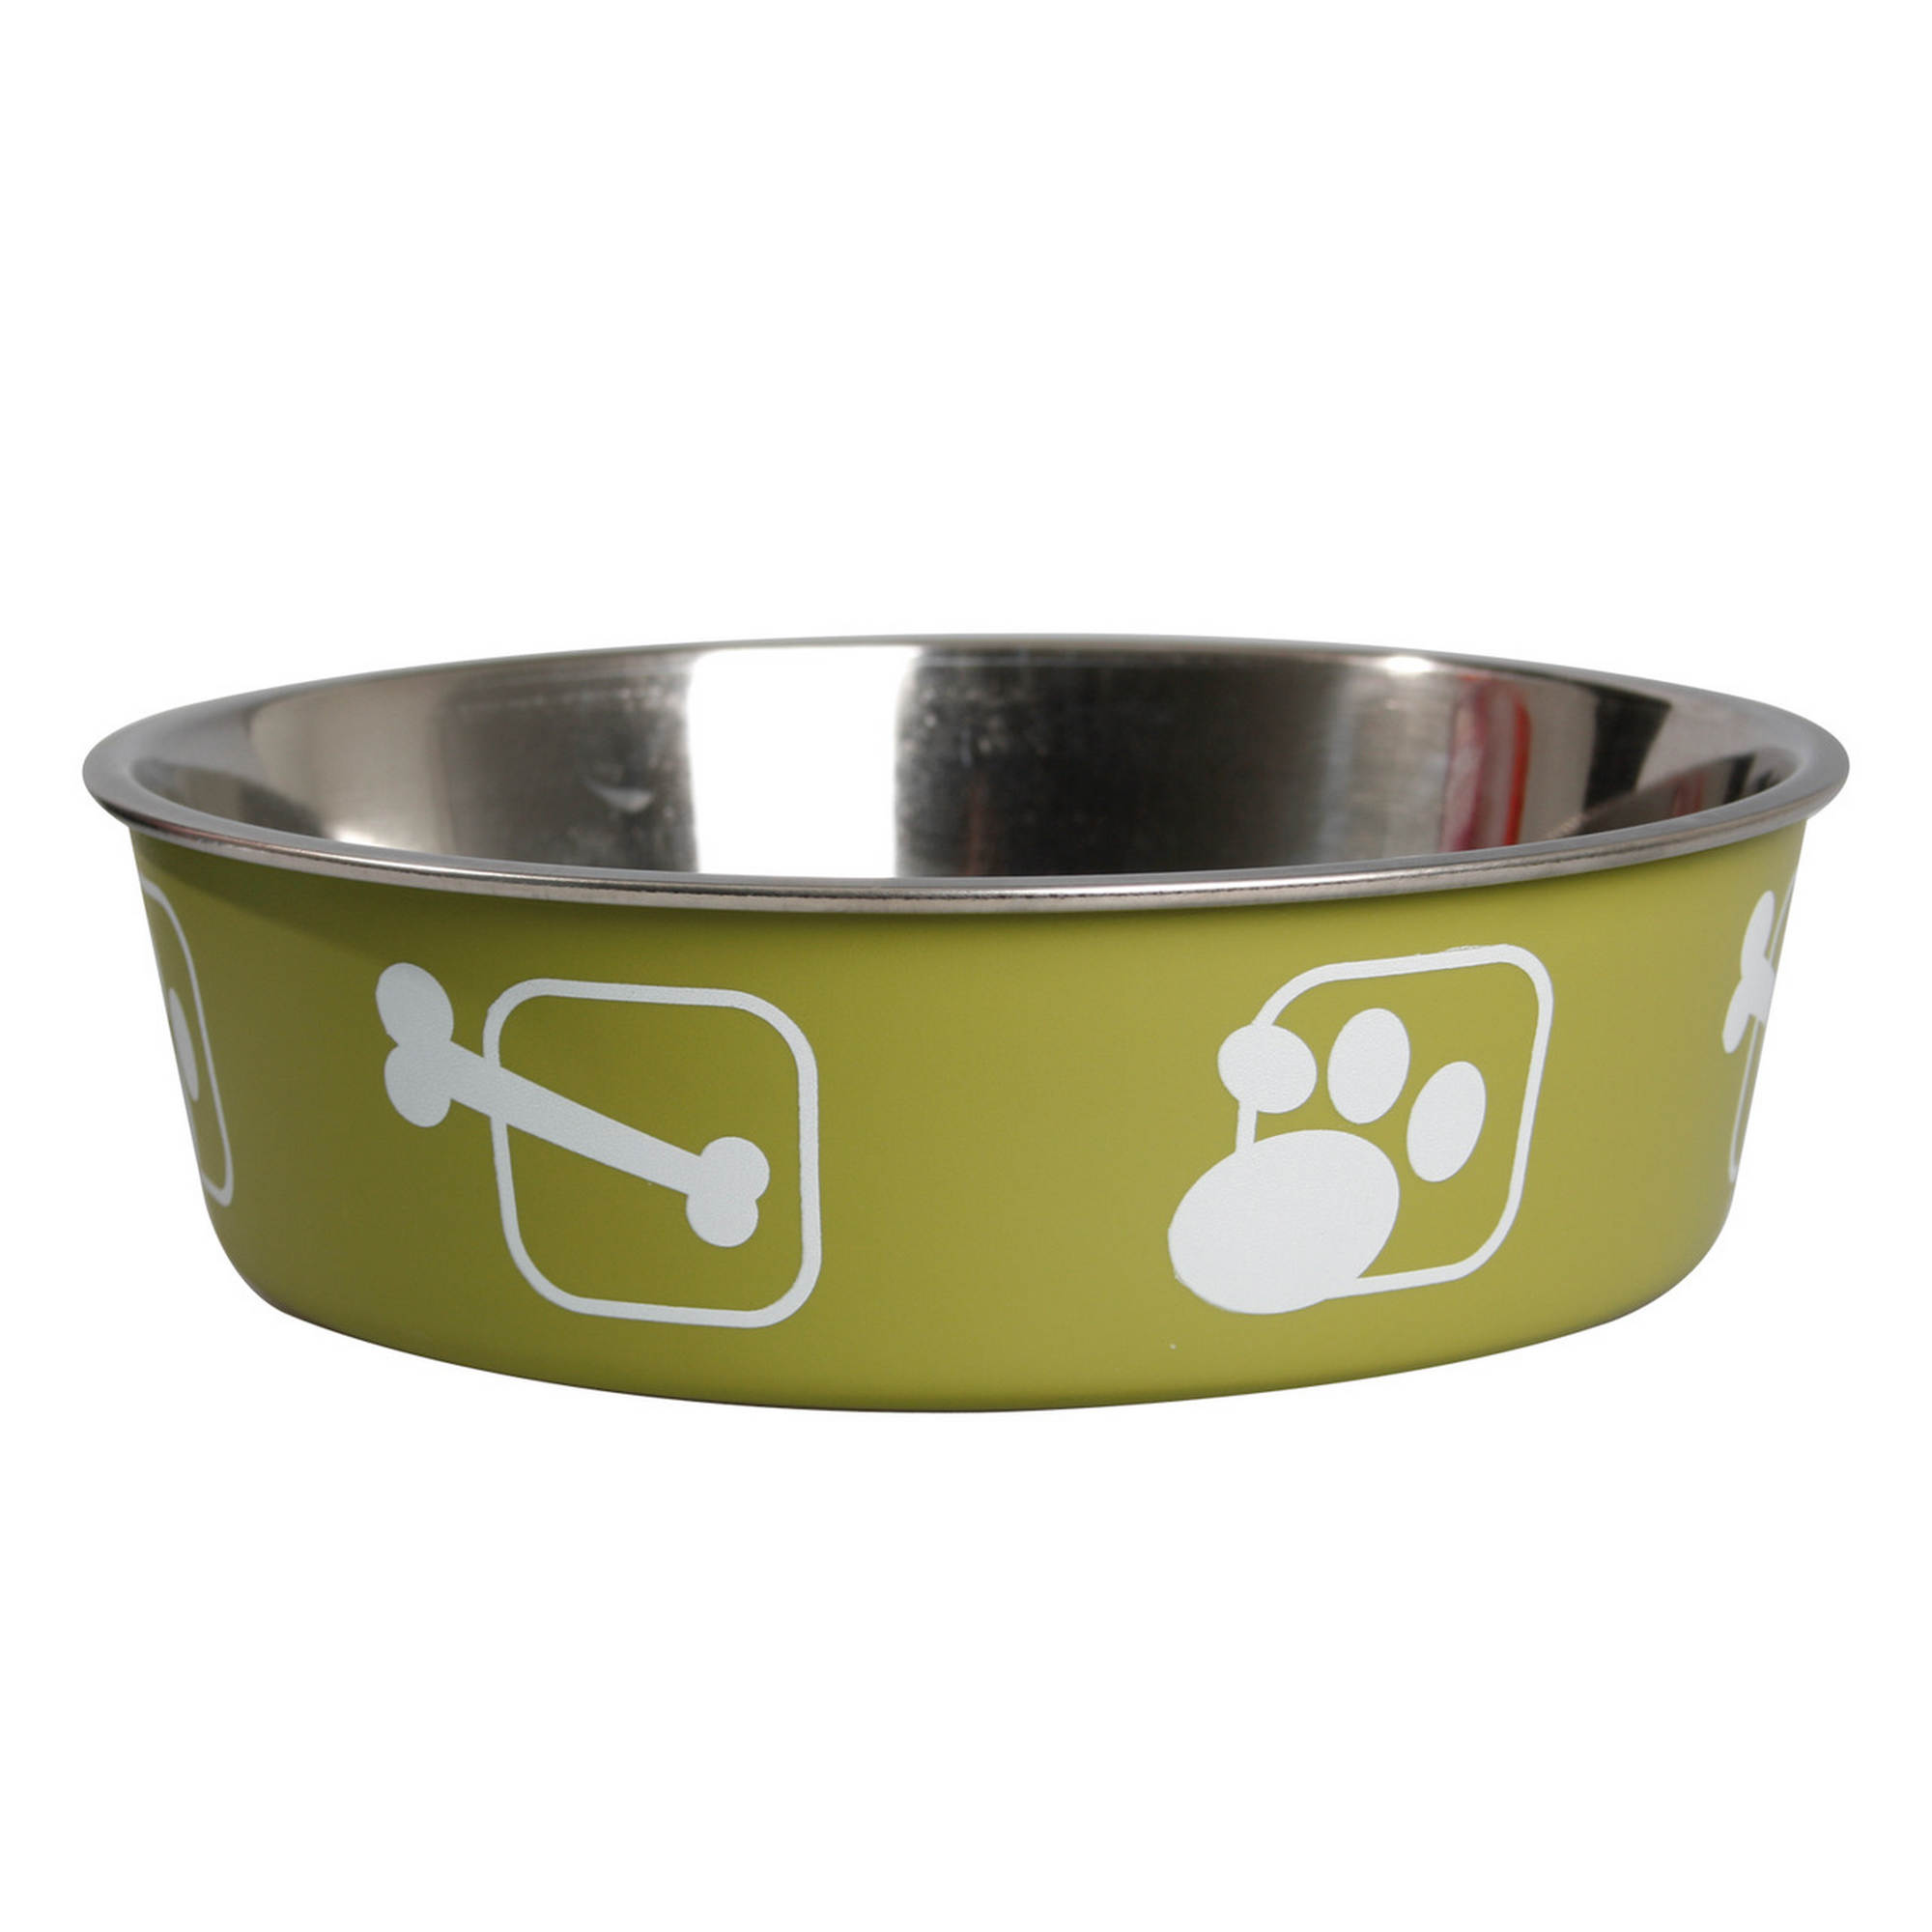 Hundenapf 'Kena' Edelstahl grün mit Knochen- und Pfotenmotiv Ø 23 cm + product picture